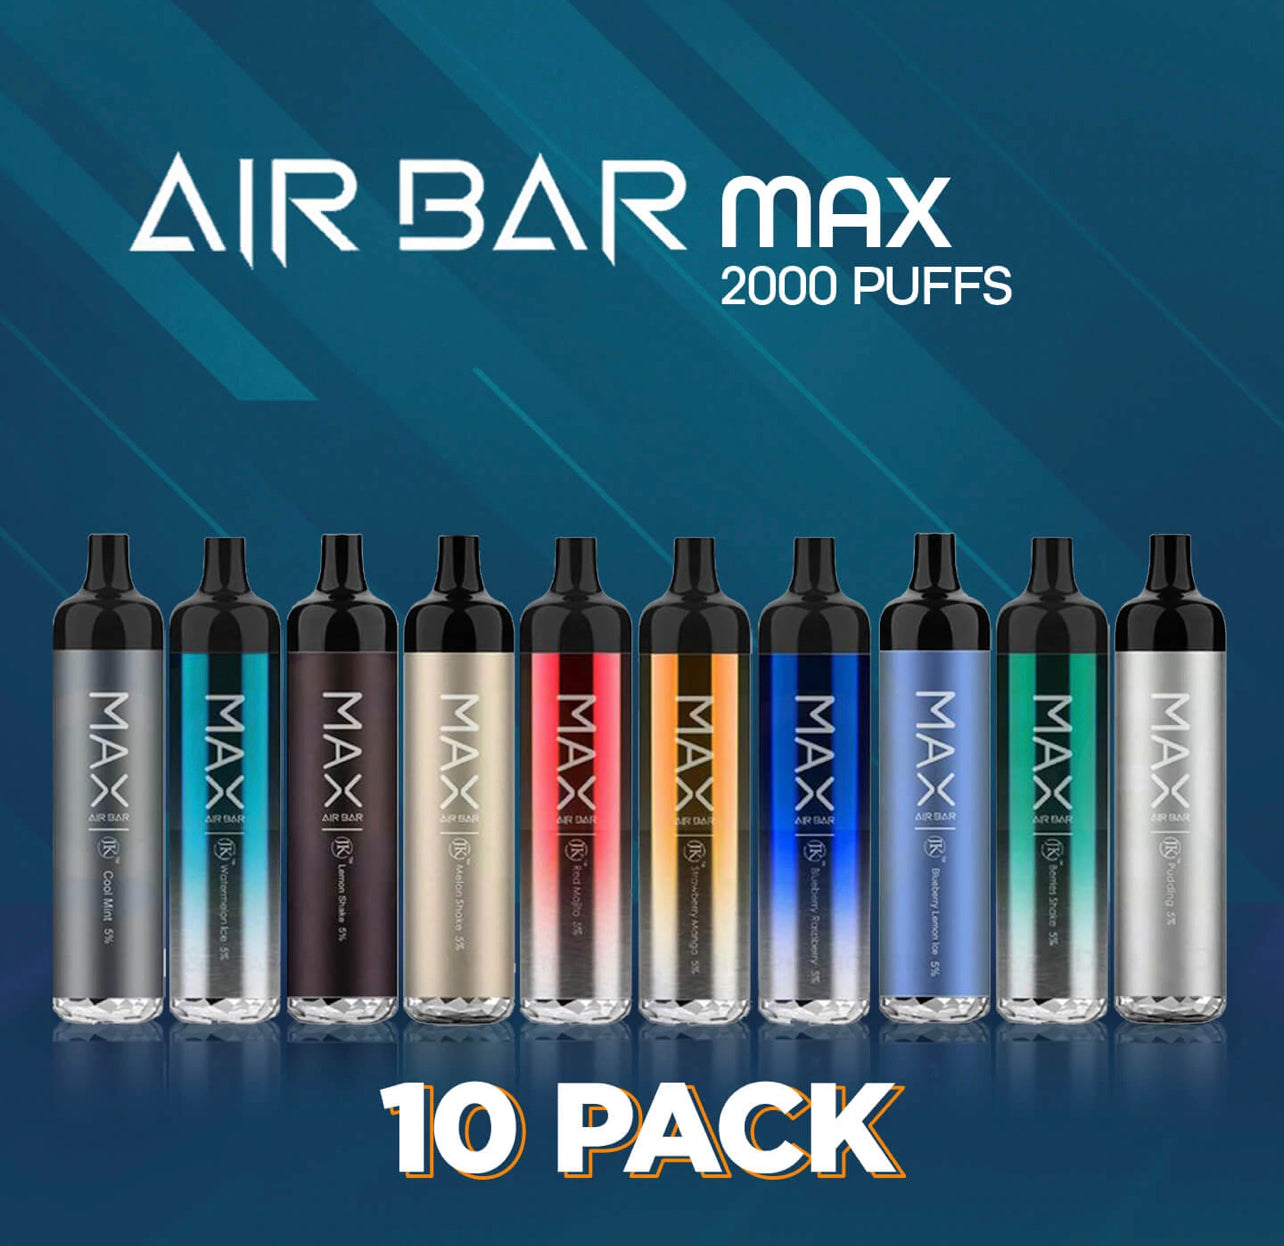 Air Bar Max 2000 Puffs 5% Nicotine